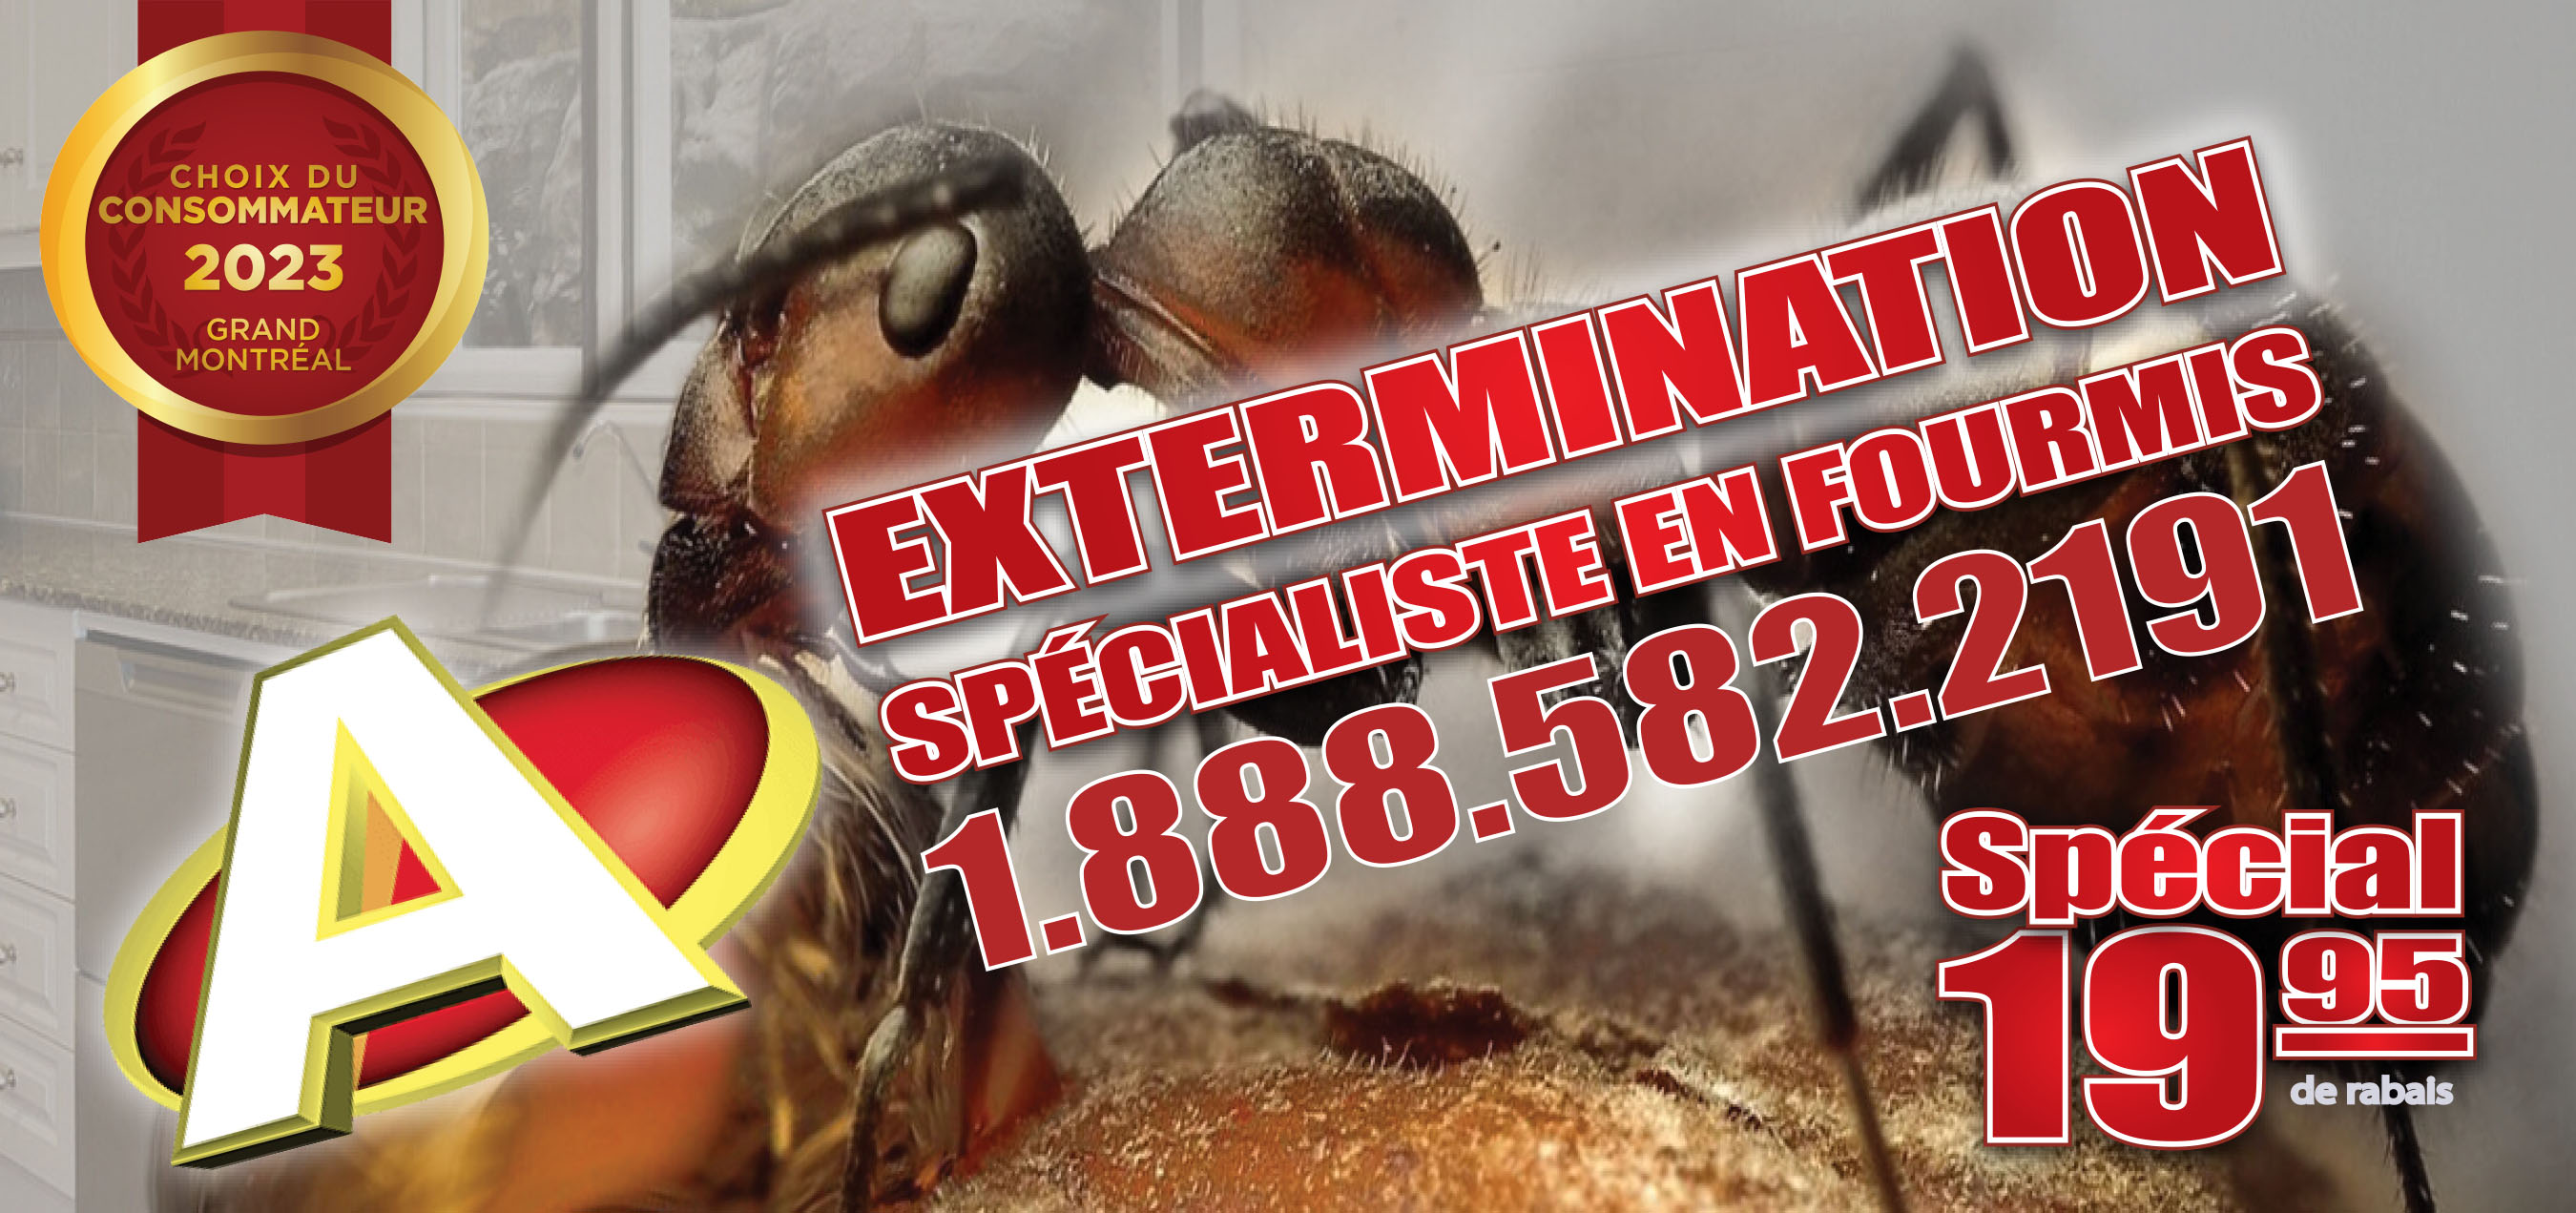 Exterminateur Longueuil A-Extermination 19$ Rabais